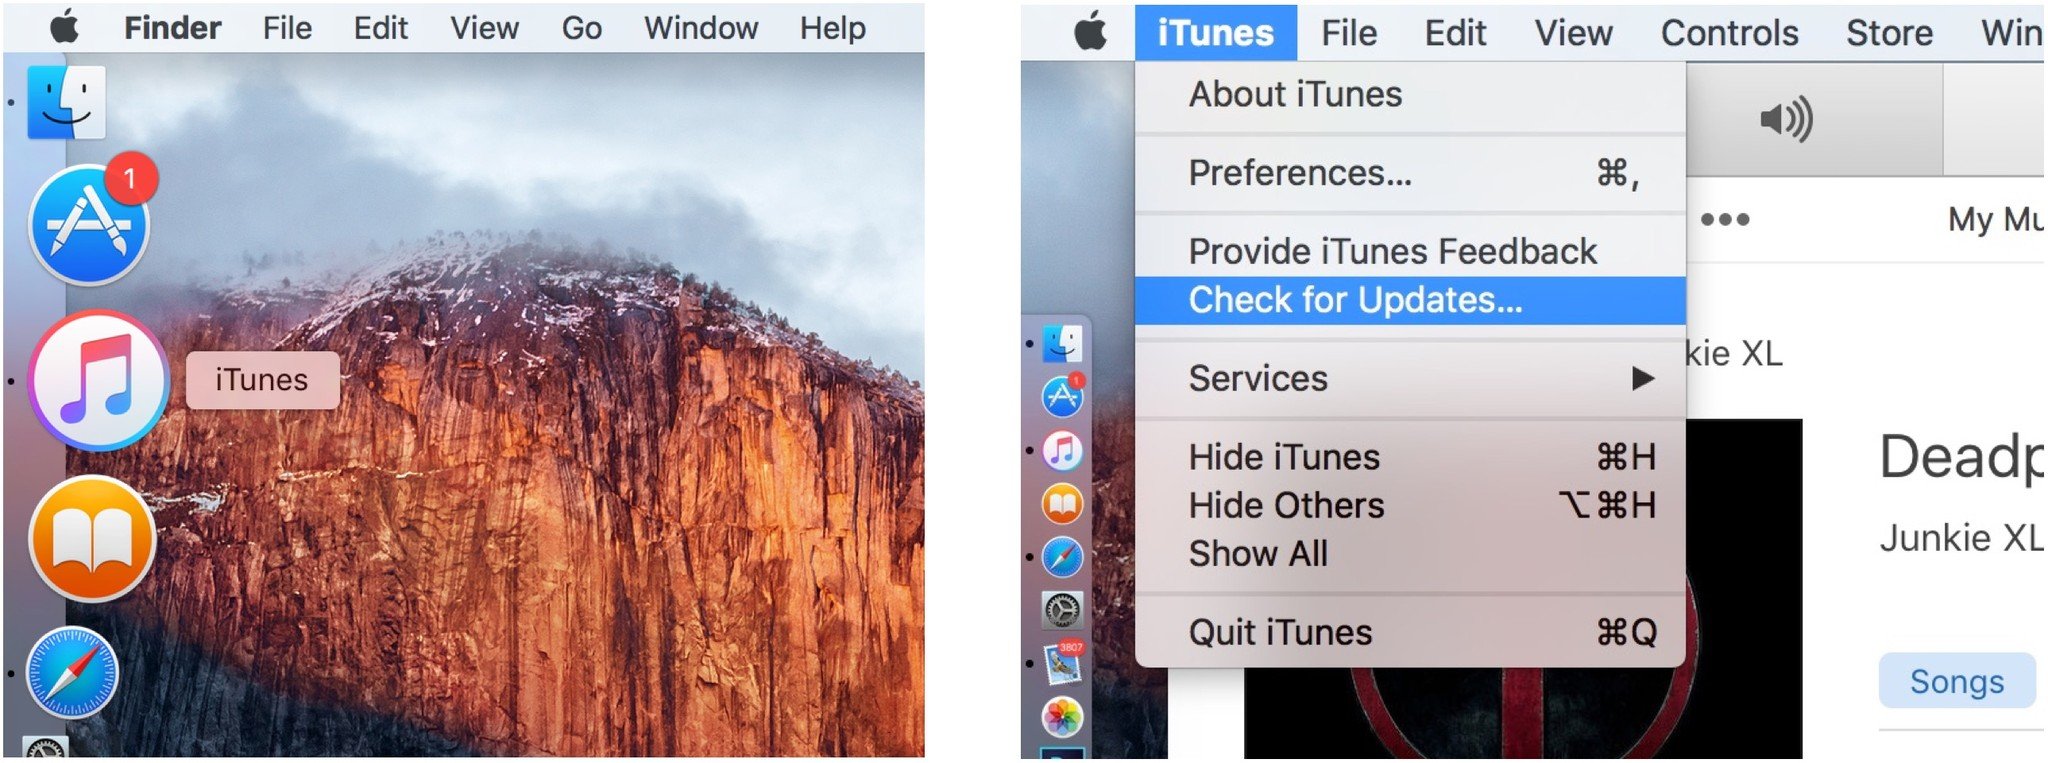 Запустите iTunes, щелкните меню iTunes, щелкните Проверить наличие обновлений.